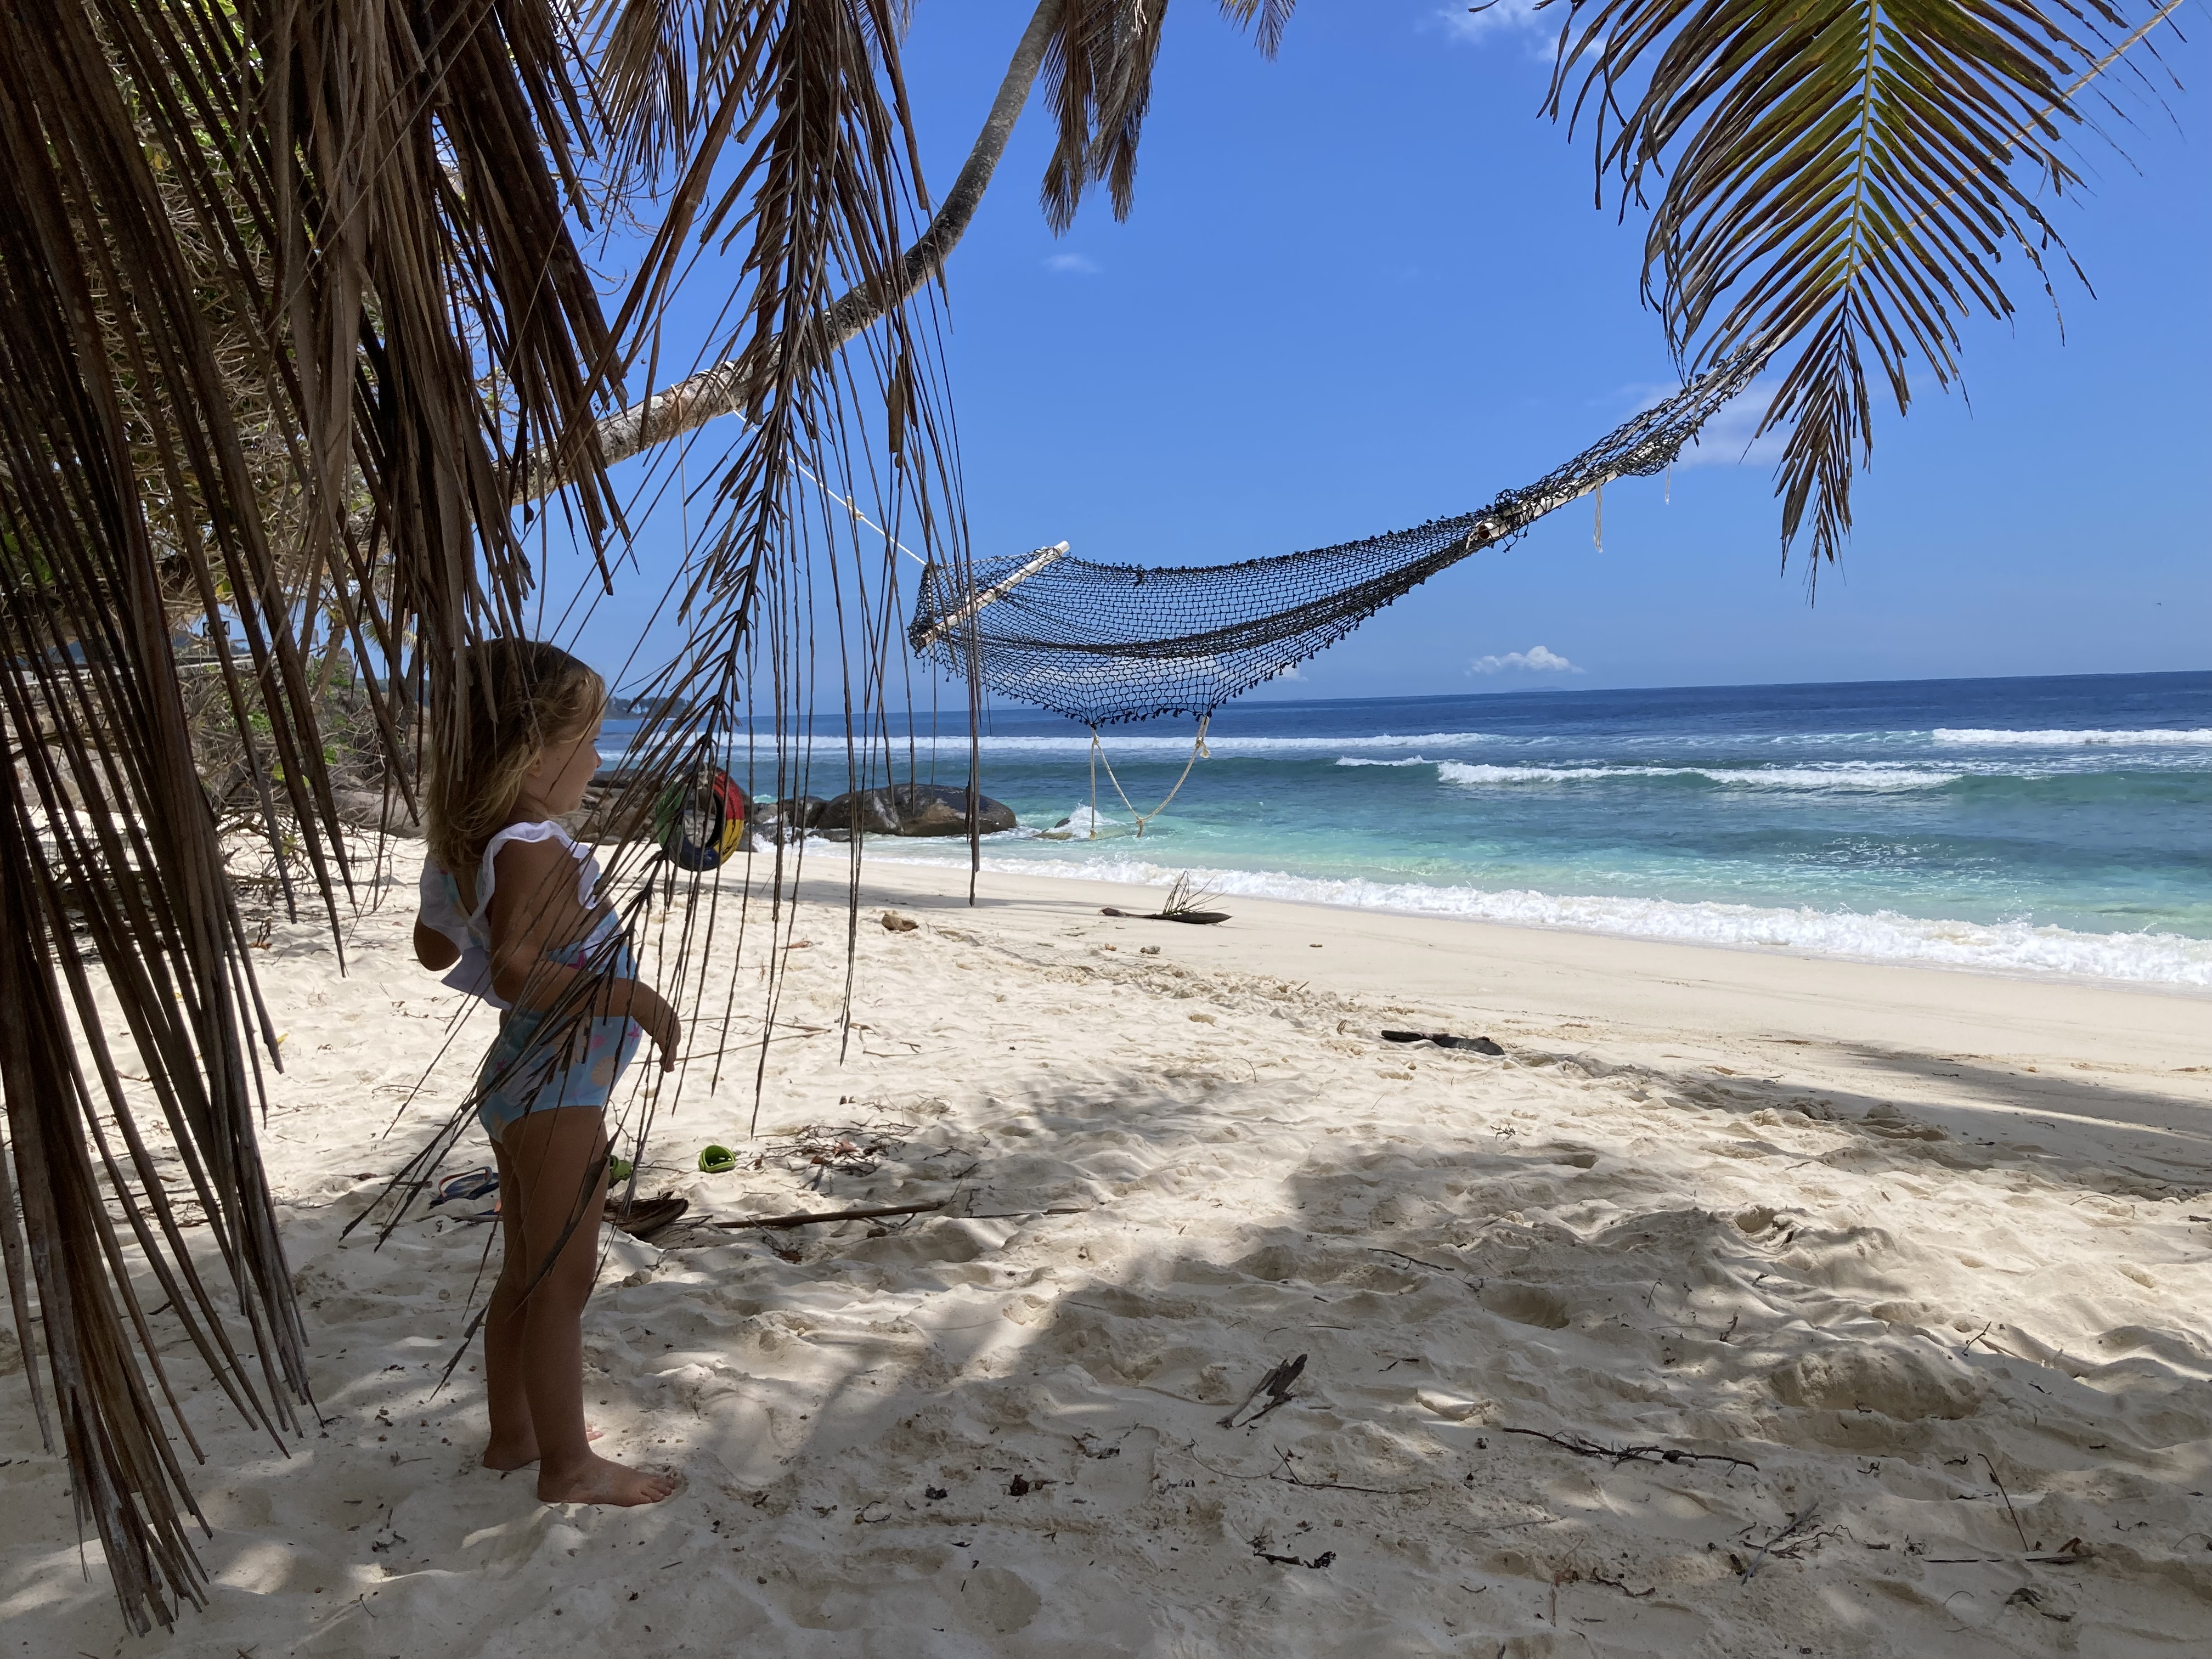 Vacanta noastra in Seychelles -  Experienta in Mahe